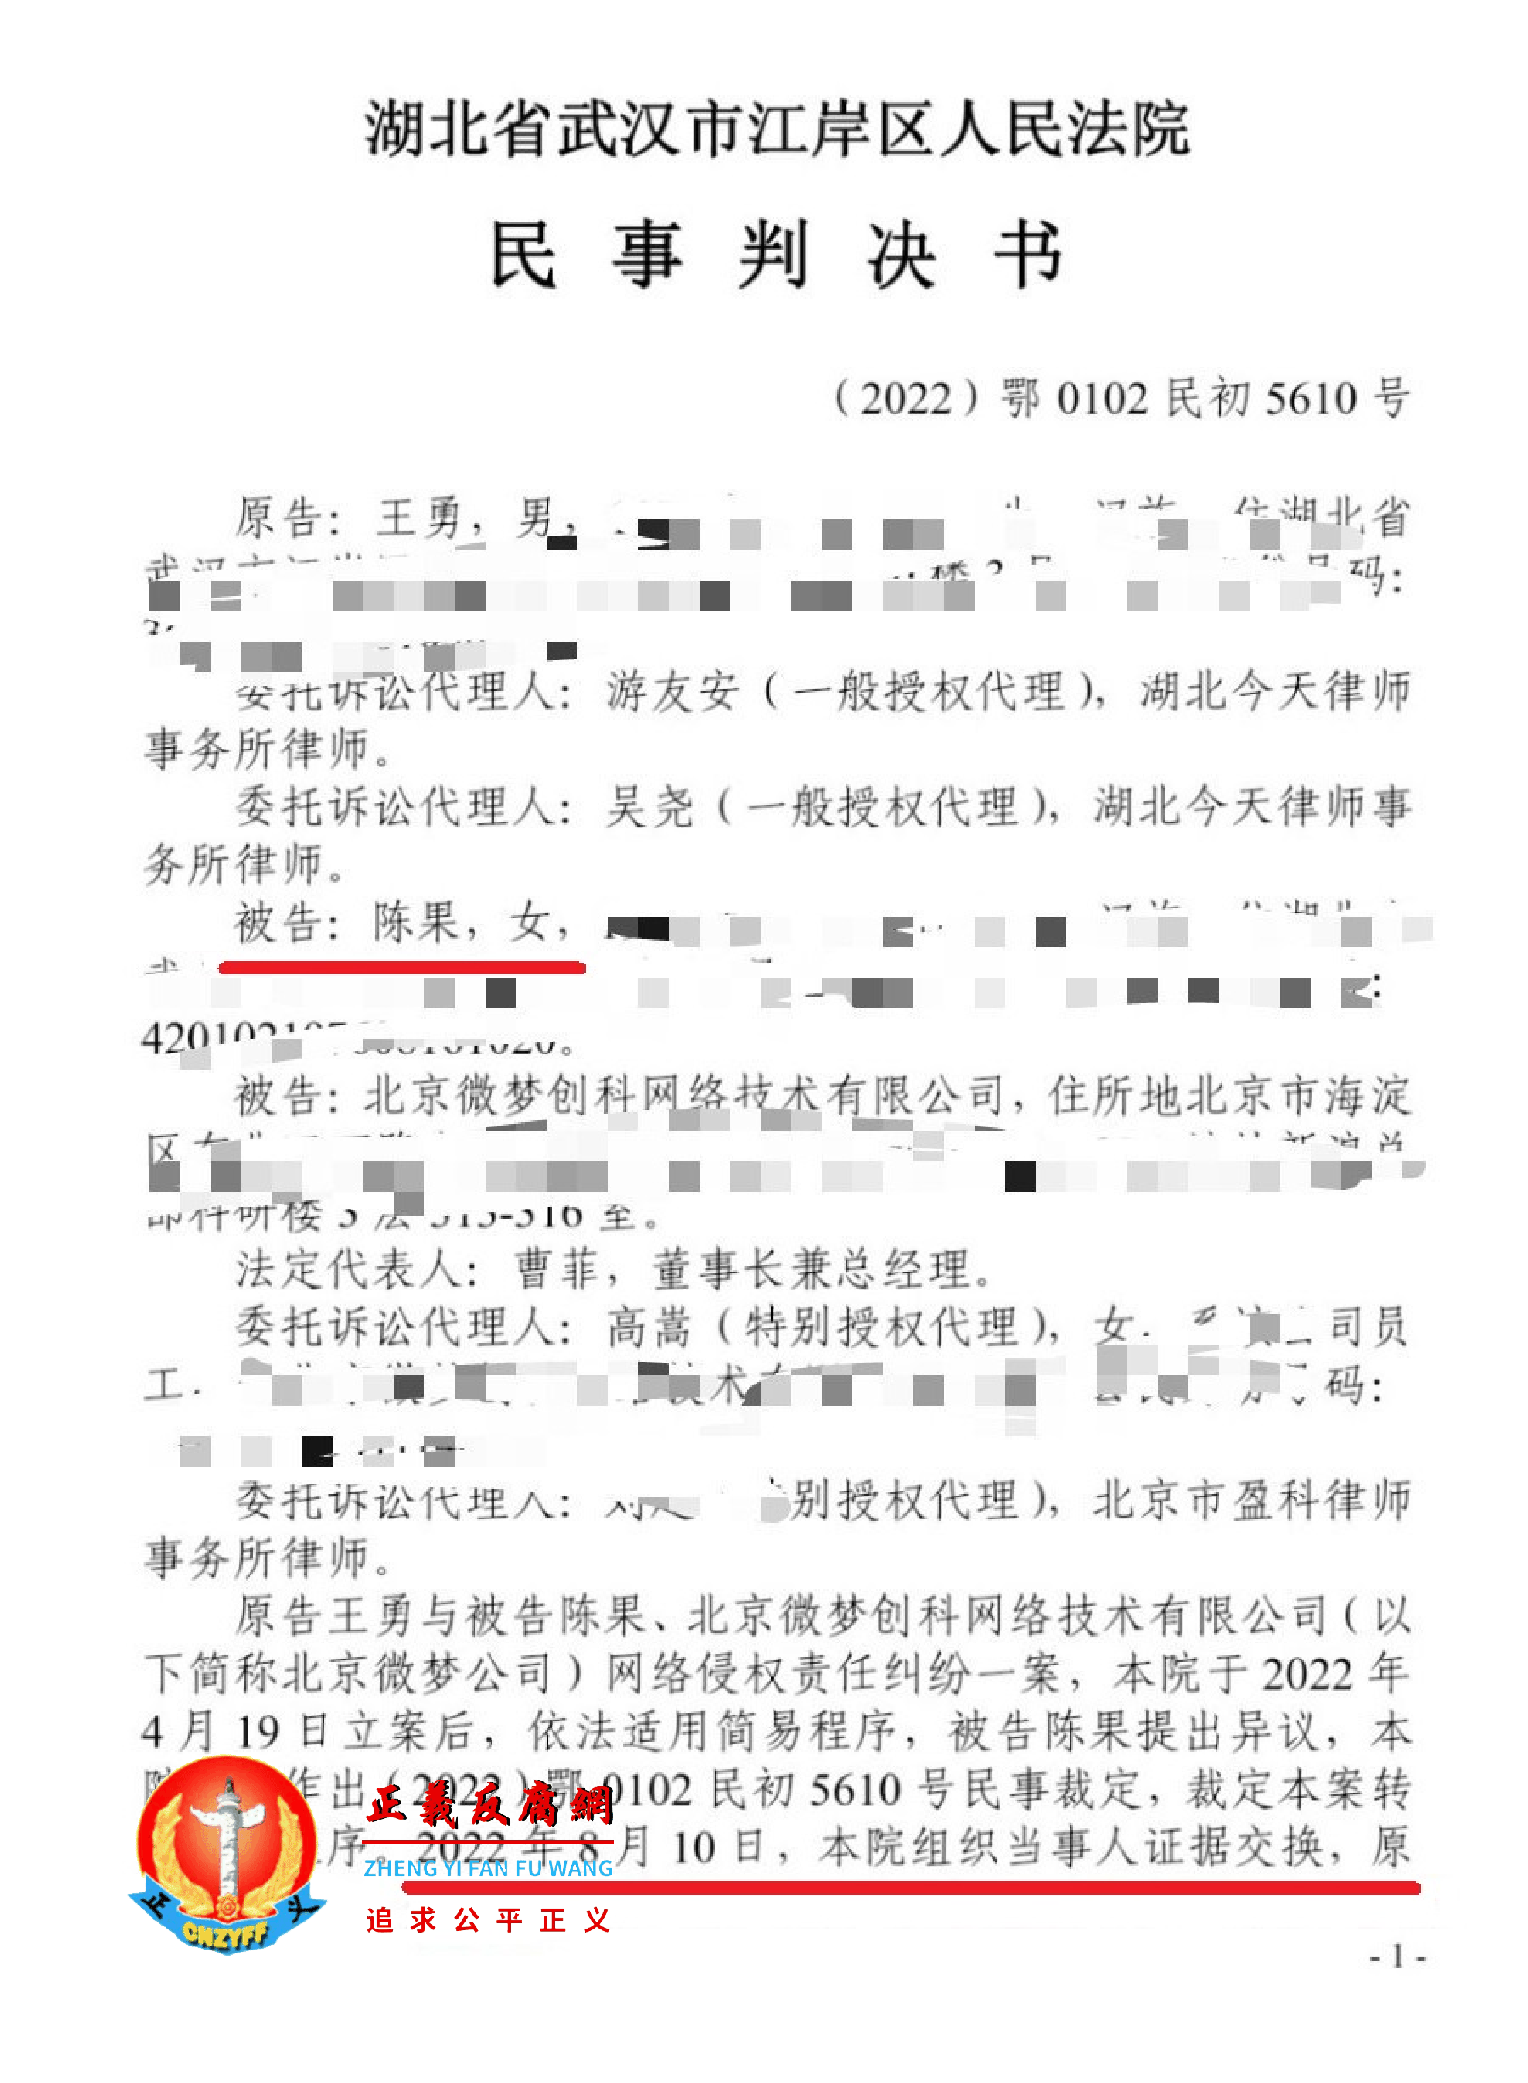 陈果判决书：2023年1月19日，艾芬和陈果同一天收到武汉市江岸区人民法院民事判决书（2022）鄂0102民初5610号，判决书落款日期为2023年1月13日。.png